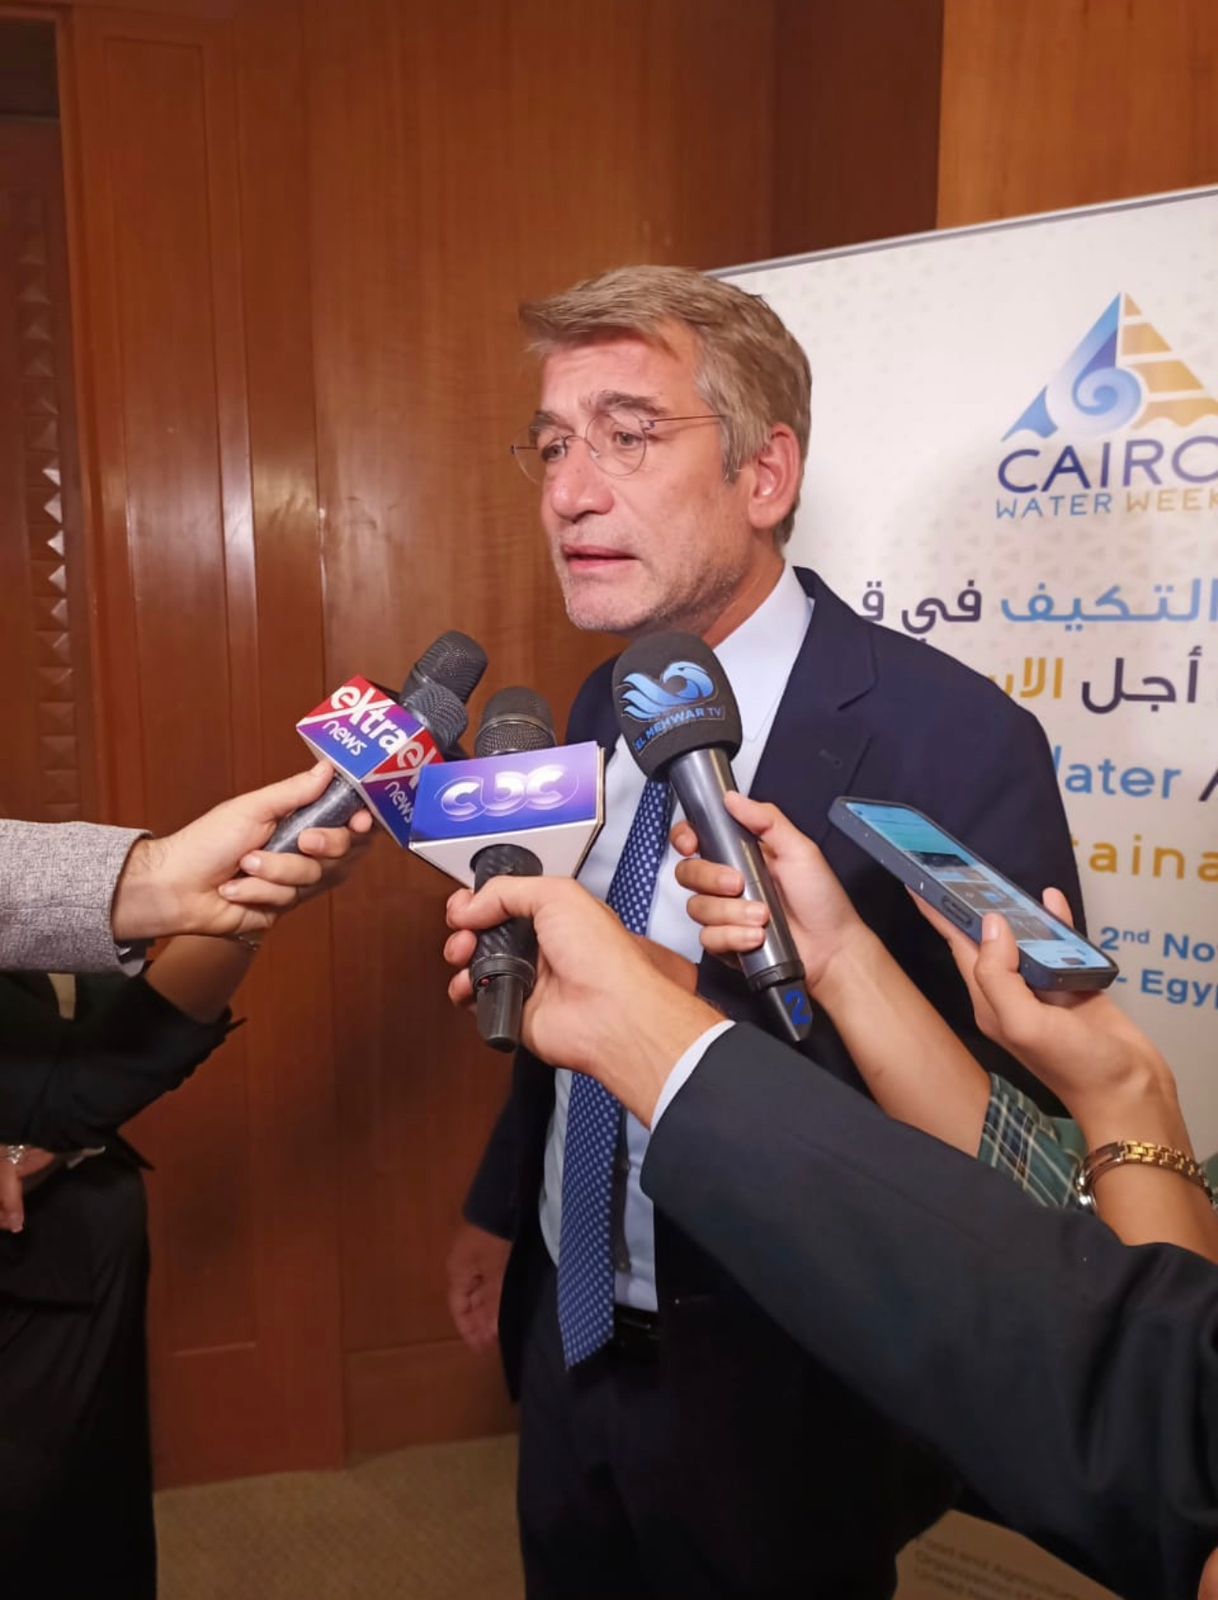 وزير الطاقة والمياه في حديث للإعلام العربي على هامش مؤتمر اسبوع القاهرة للمياه